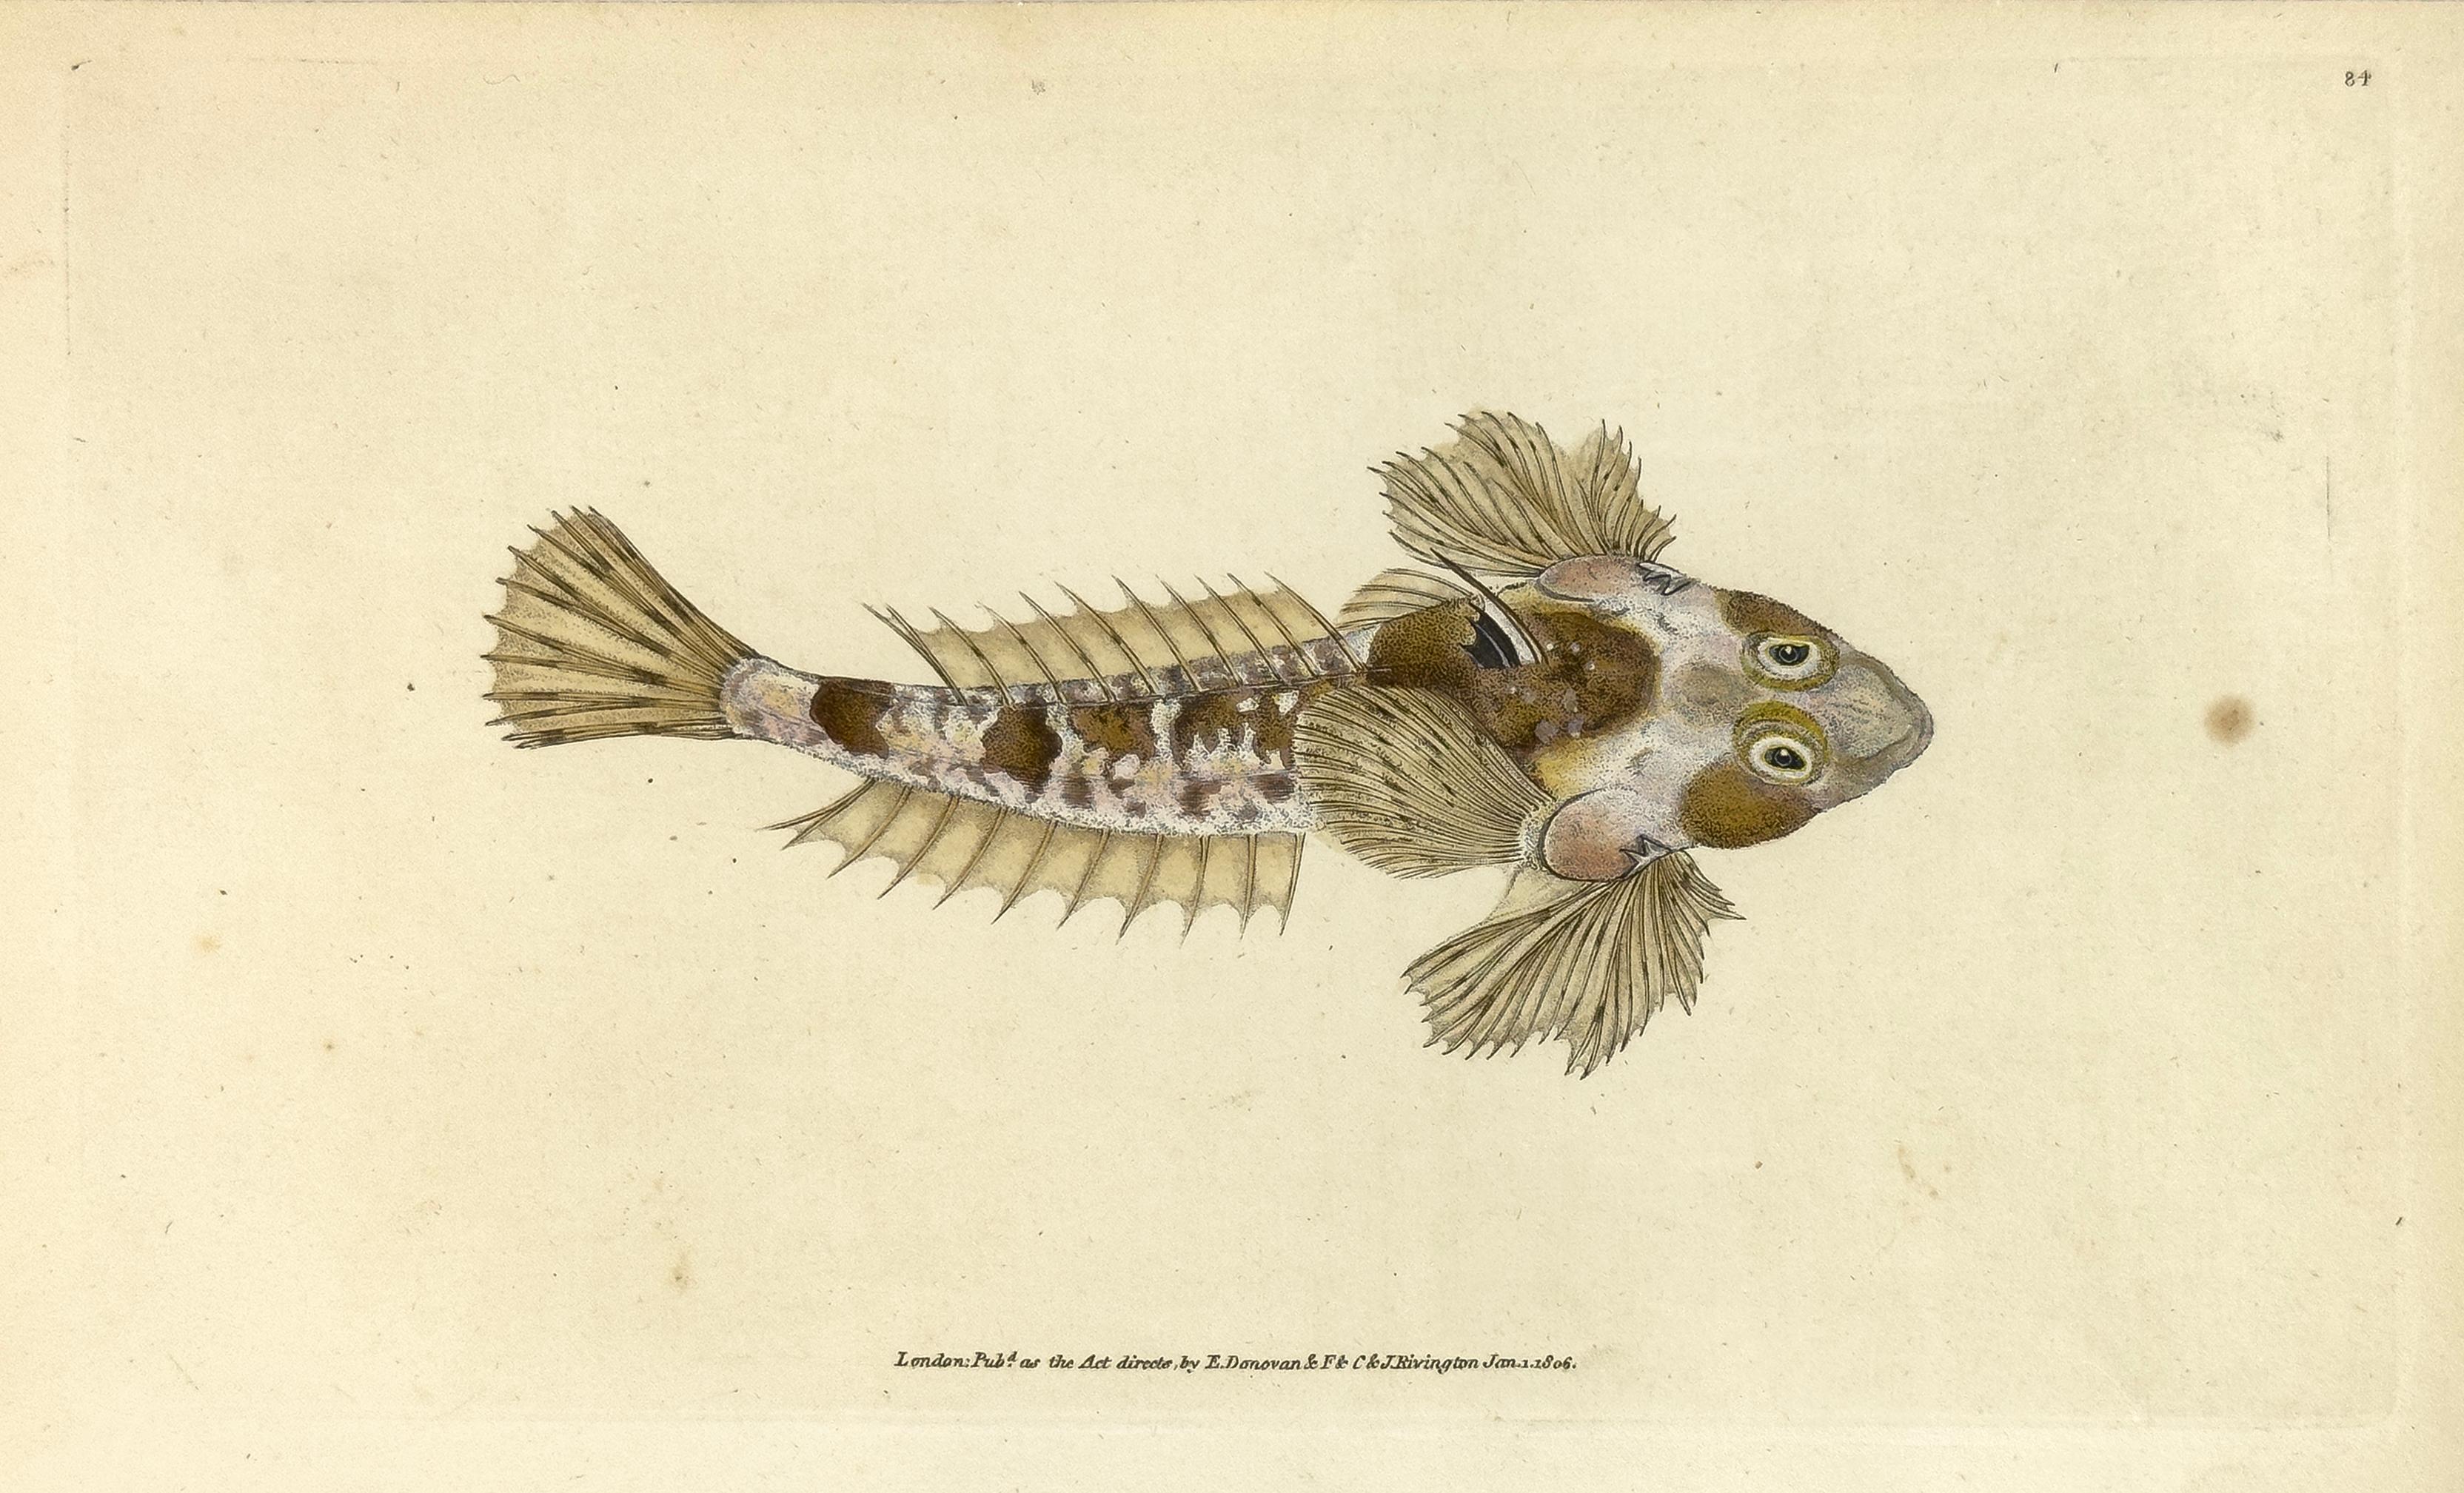 Edward Donovan Print – 84: Callionymus dracunculus, Gemeiner Drachenkopf